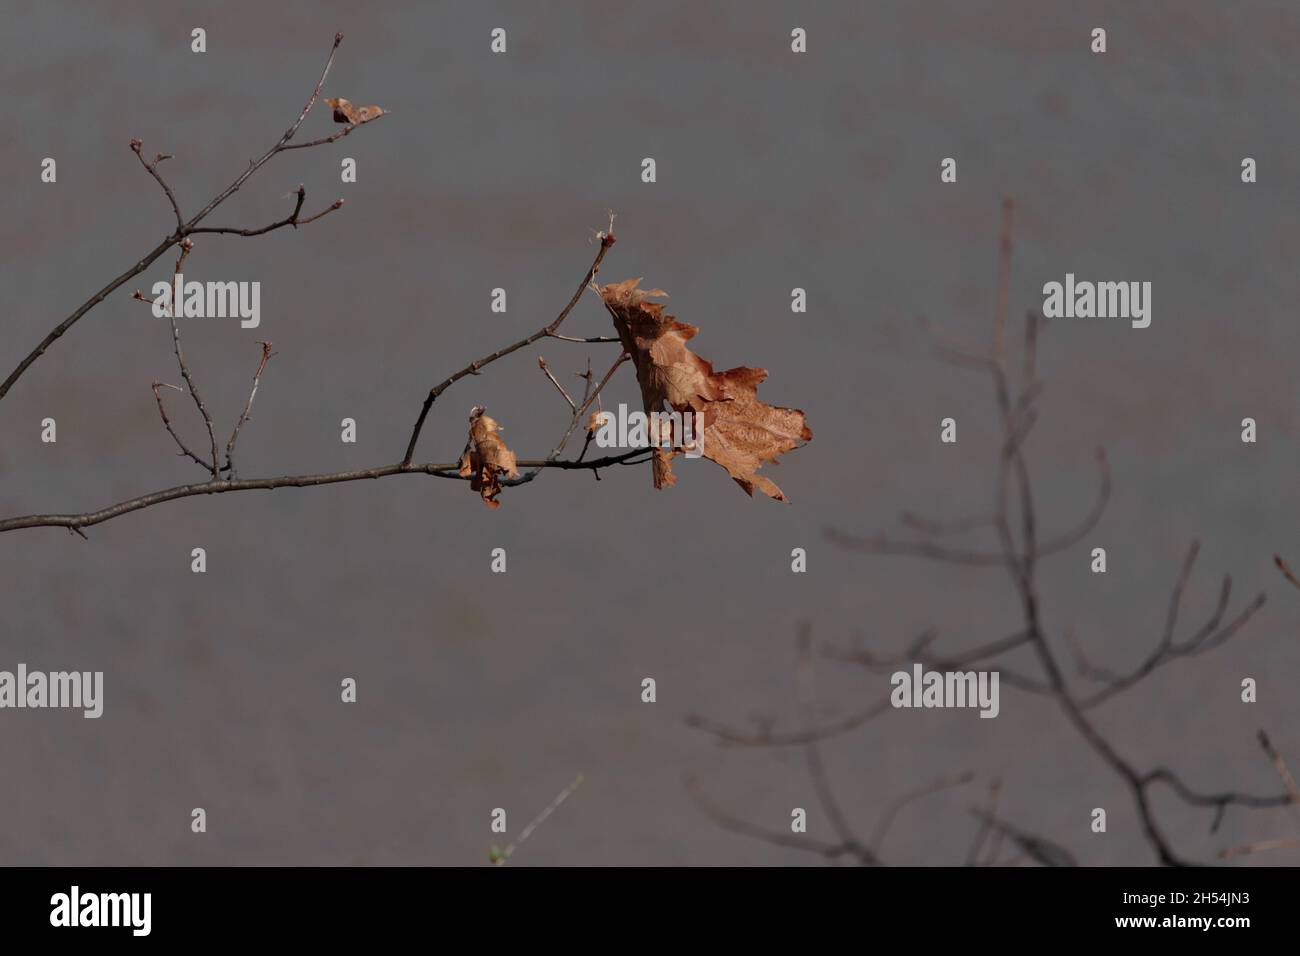 una hoja de roble seca y marchita cuelga precariamente de una rama delgada contra un fondo gris cielo en invierno, con espacio de copia Foto de stock